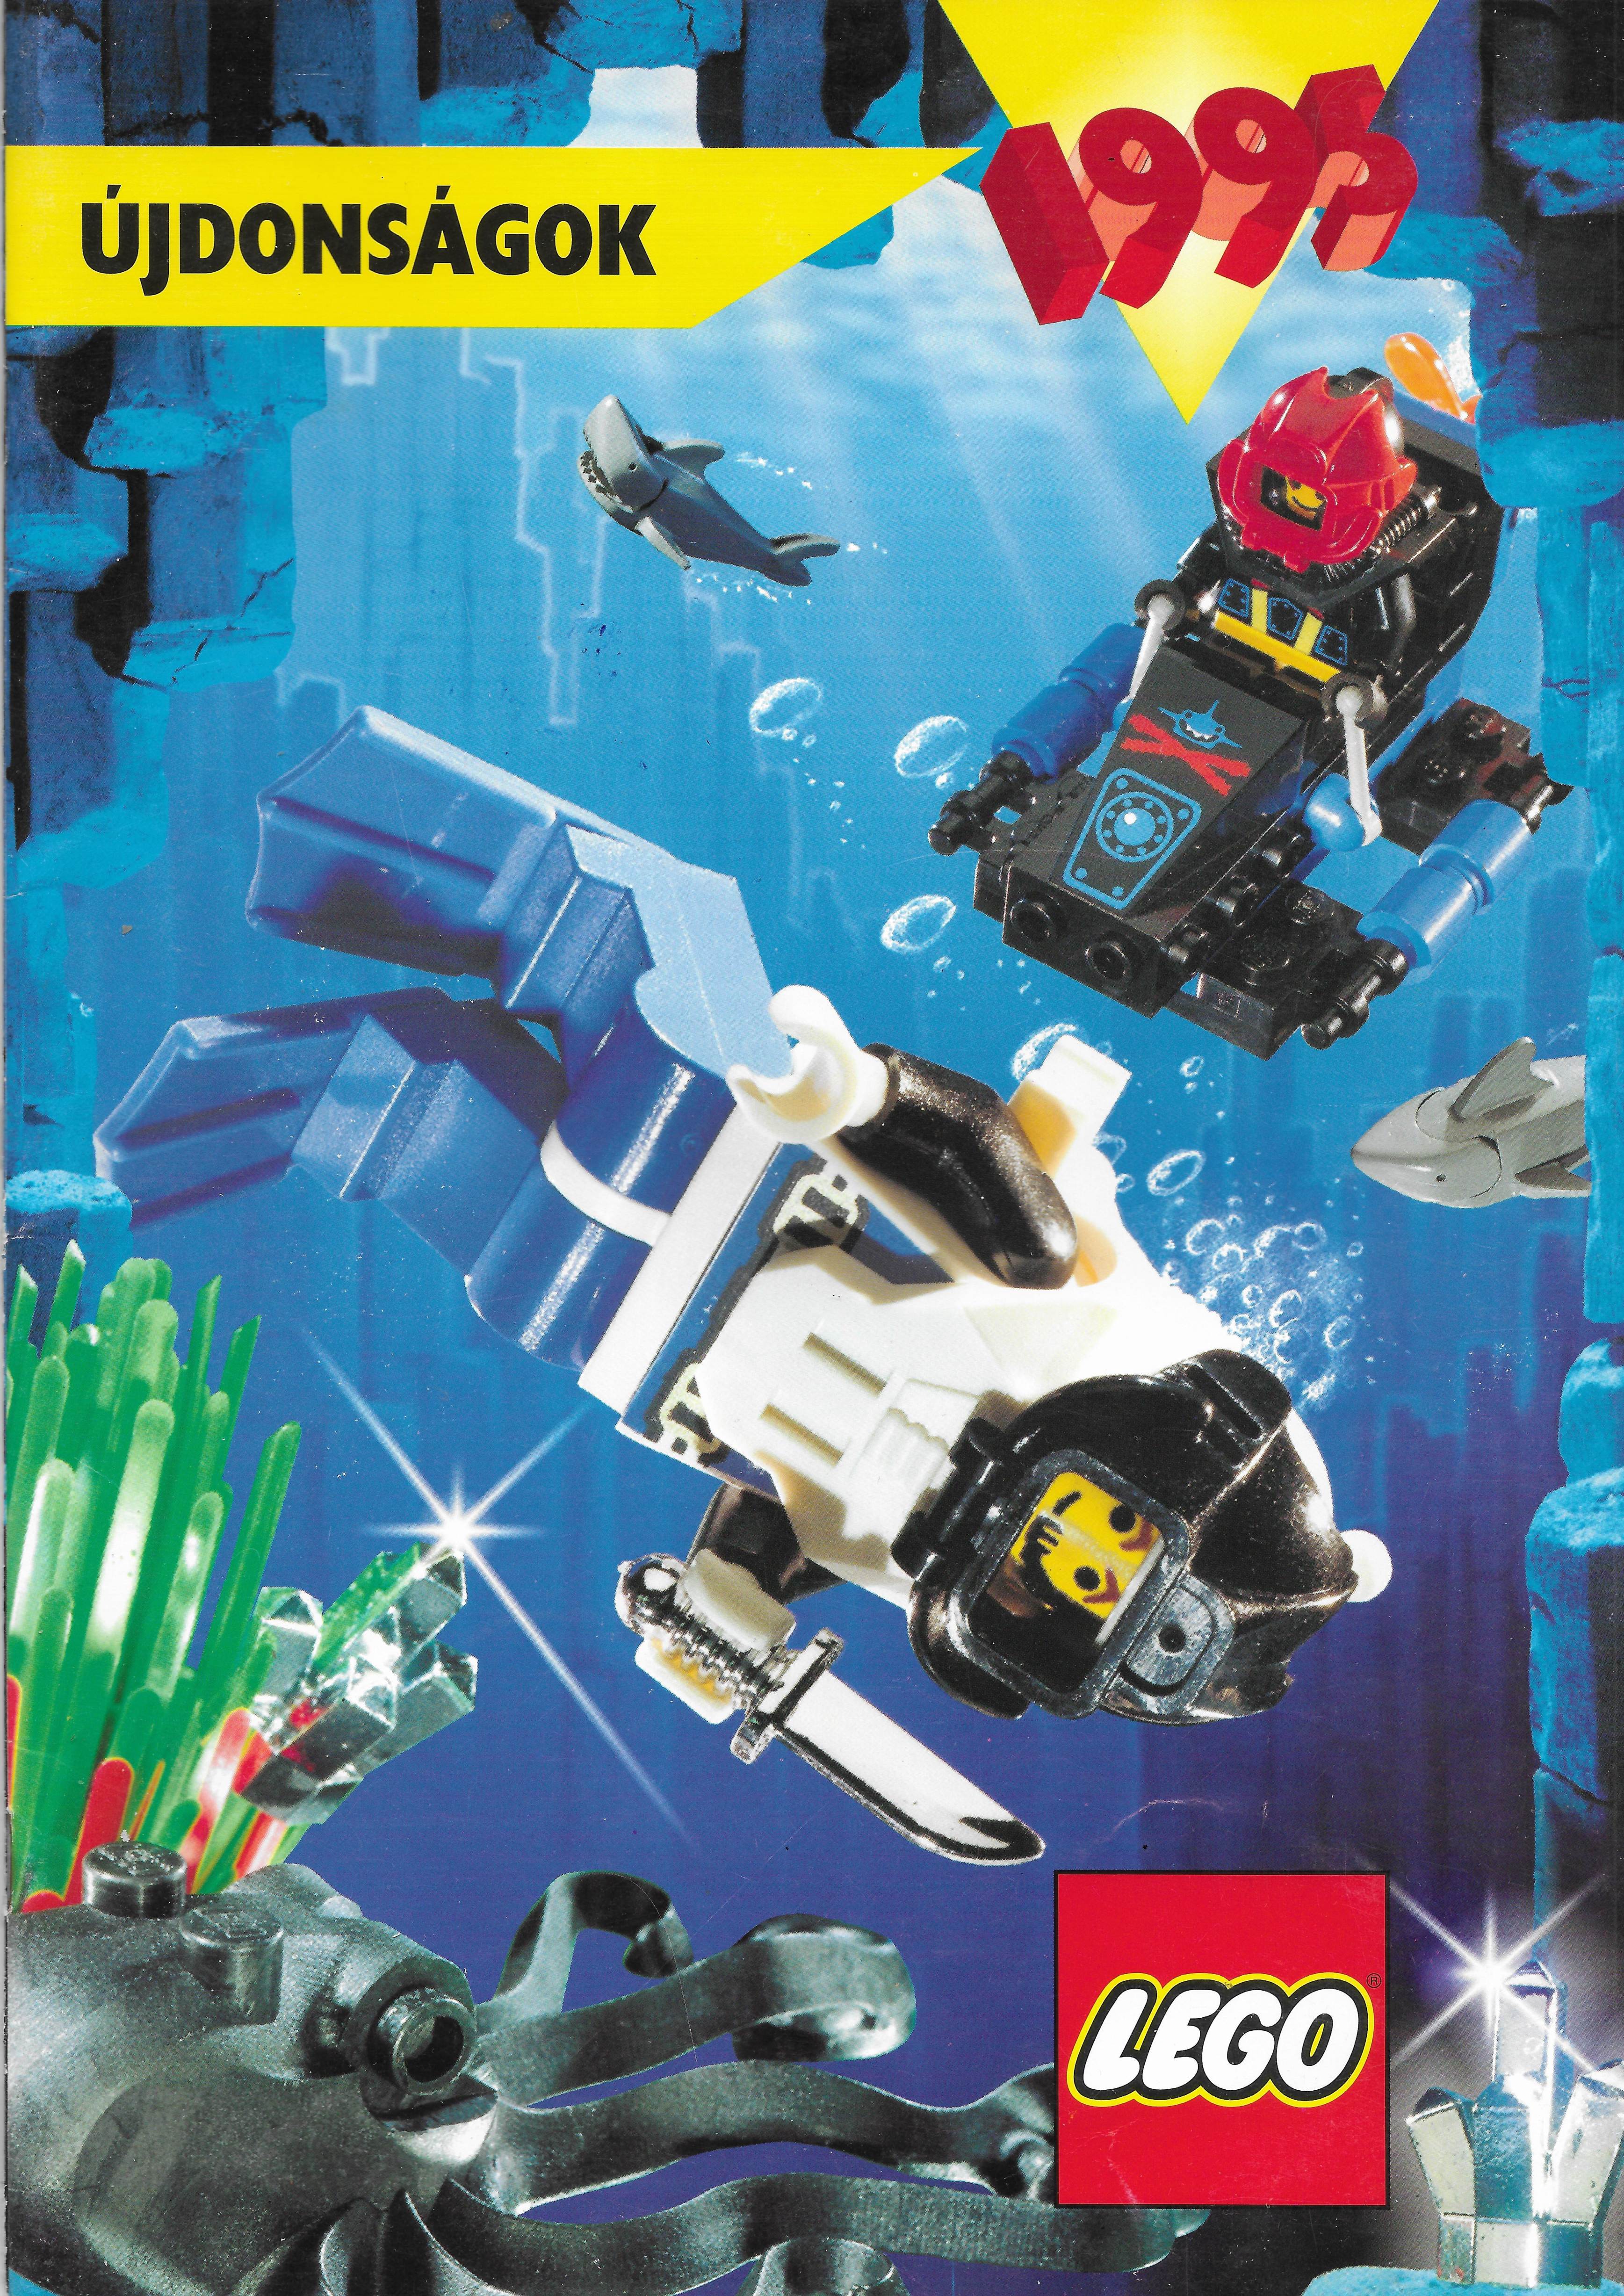 Magyar Kereskedőknek szóló Lego Katalógus 1995-ből